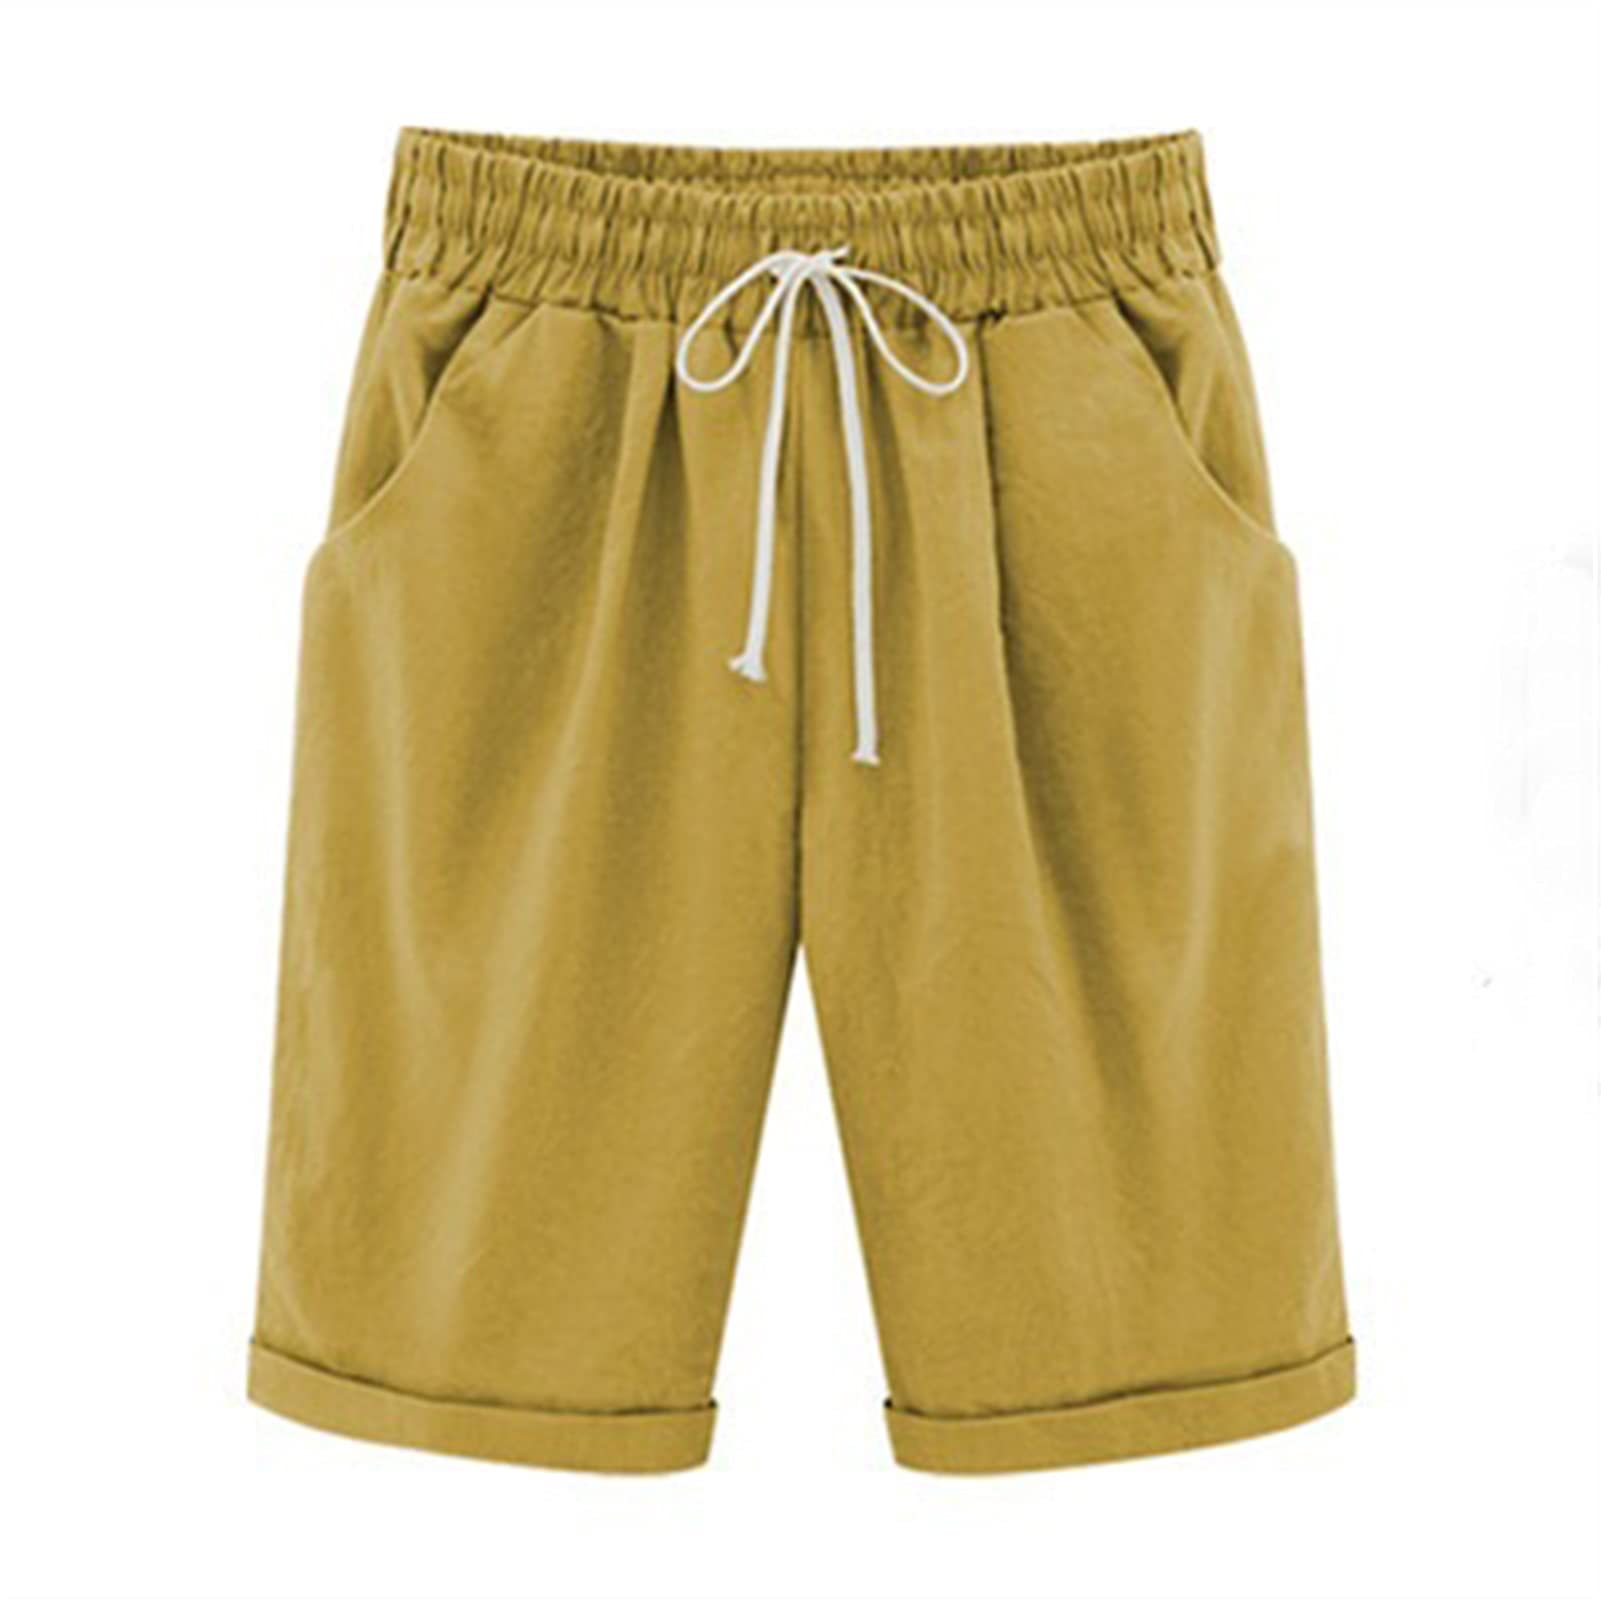 ZRDSZWZ Zuverlässige Sommer-Shorts für Damen, lässig, mit Kordelzug, elastische Shorts, knielang, Bermuda-Shorts für Damen, große Größe, Übergröße 6XL (Farbe: Gelb, Größe: XXL)